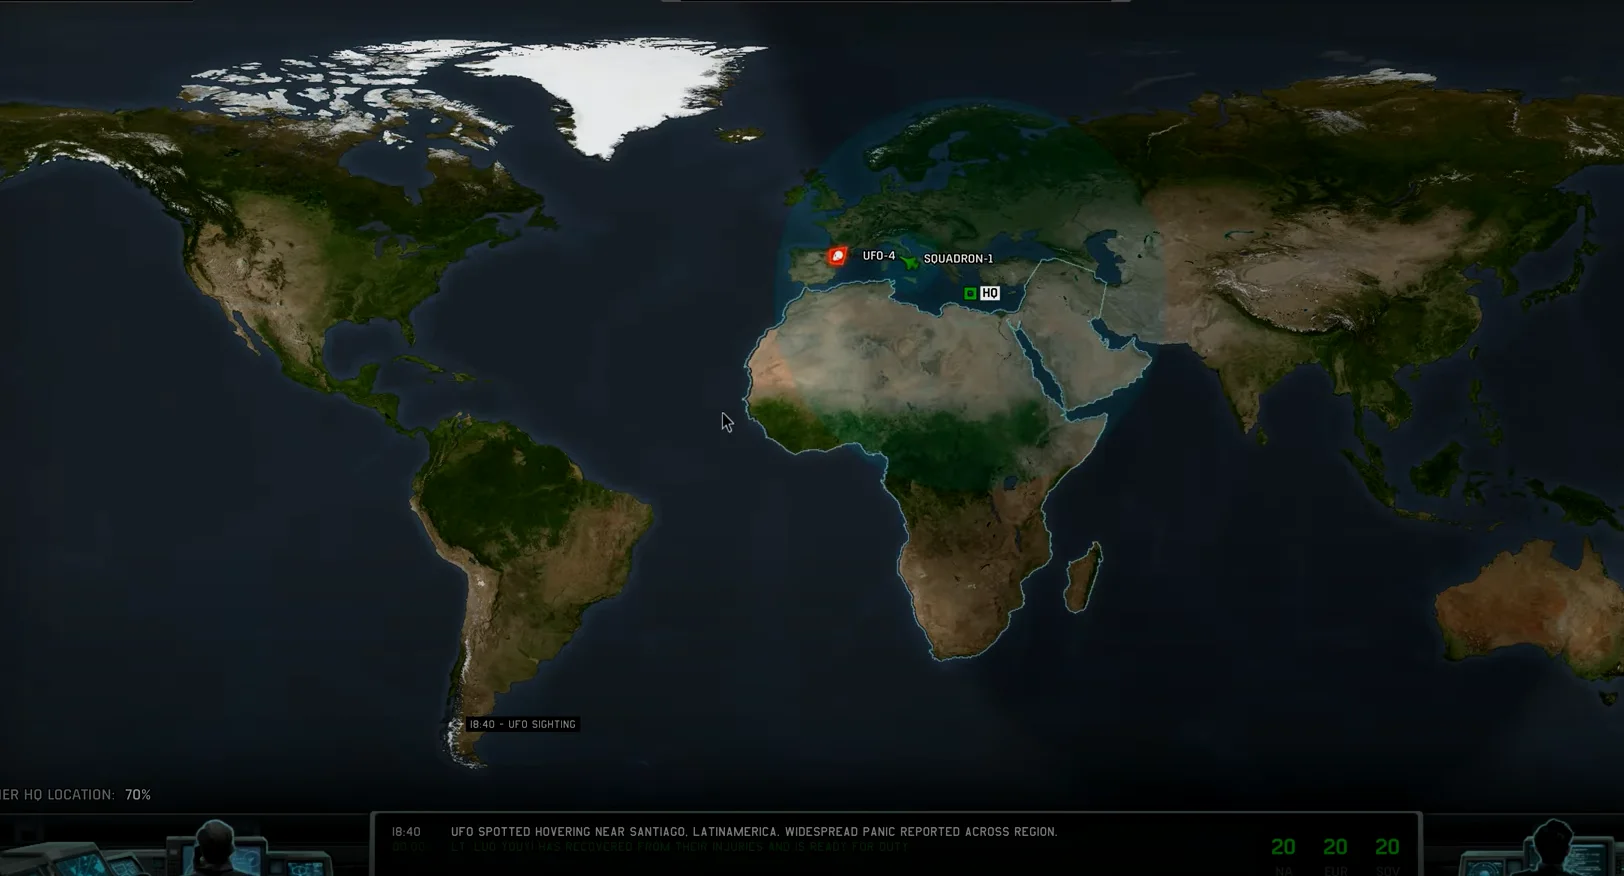 游戏大地图中显示的X-25雷达探测范围（内圈）和基地雷达探测范围（外圈）